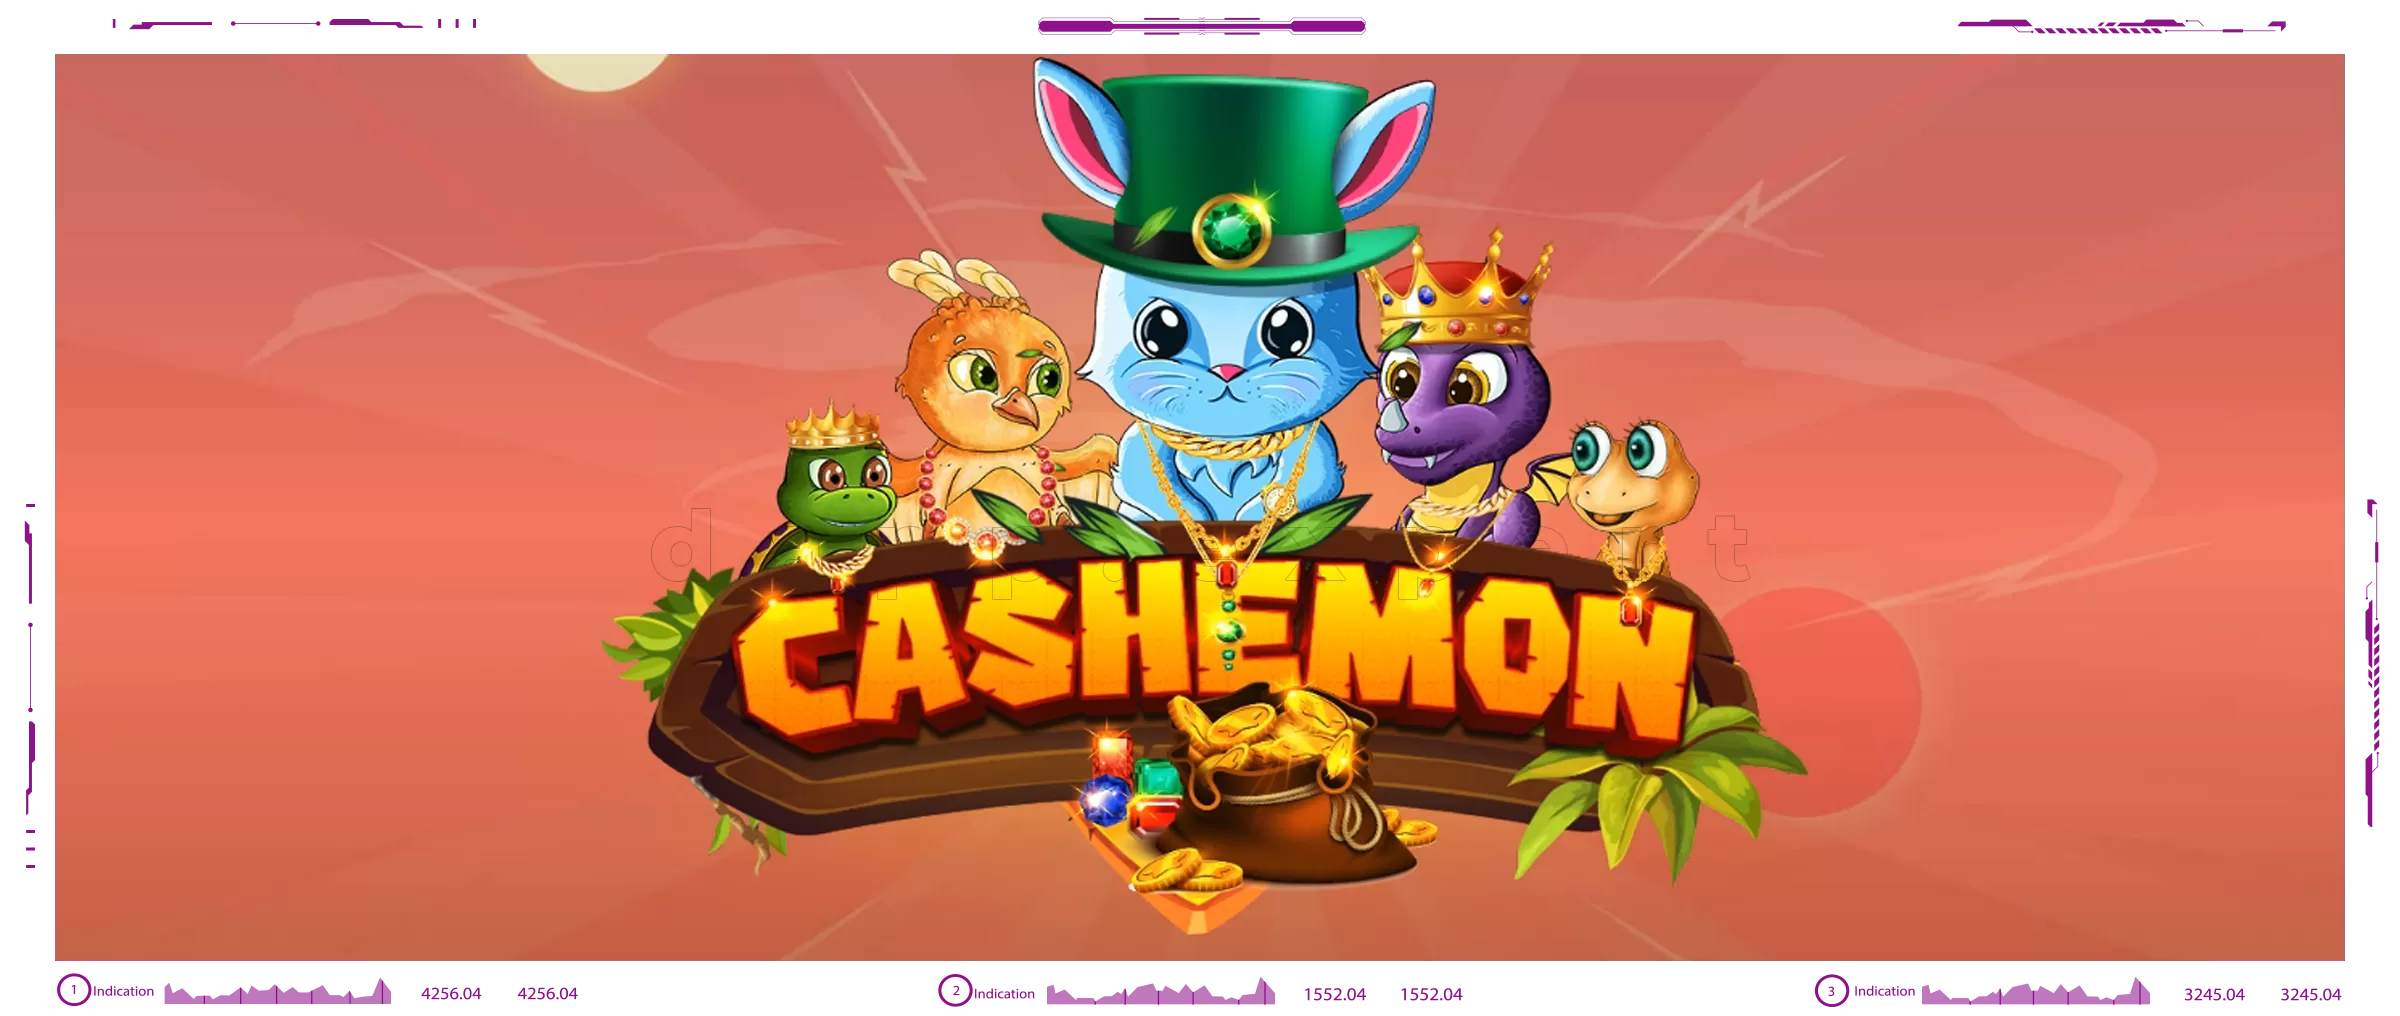 Dapp Cashemon Part1 - the Egg Game